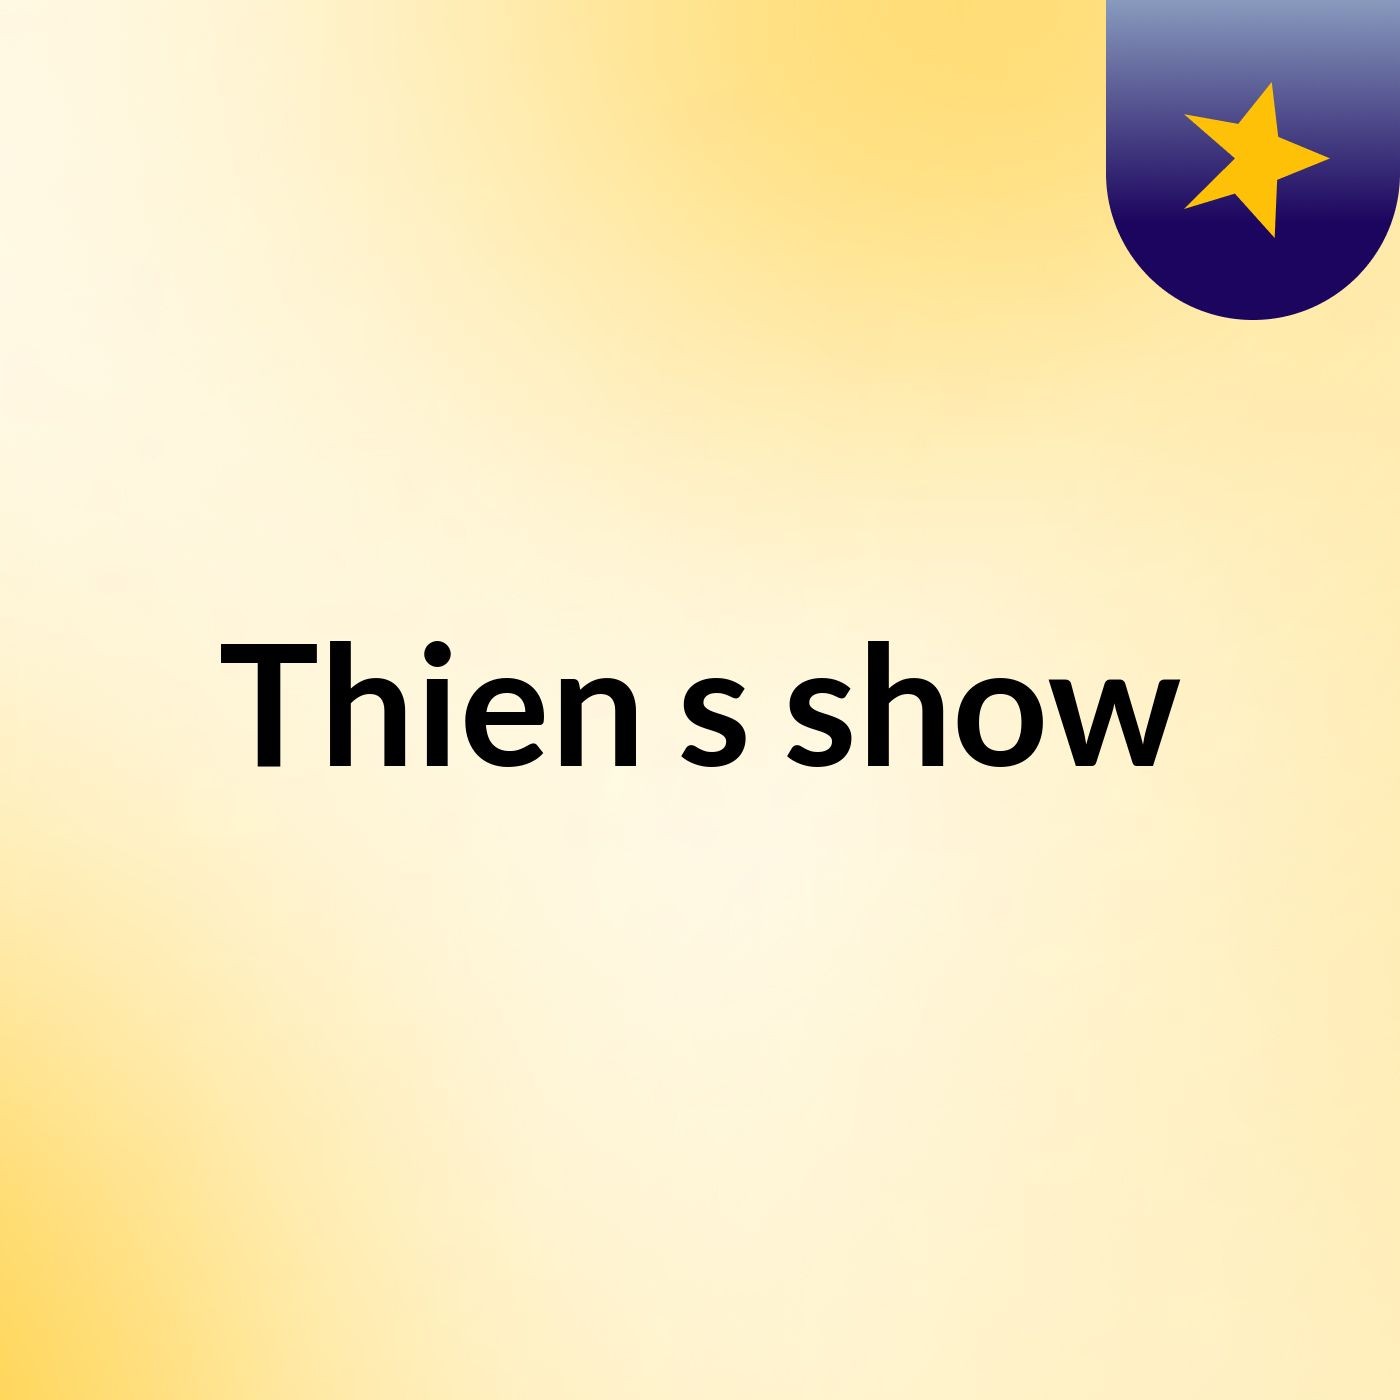 Thien's show